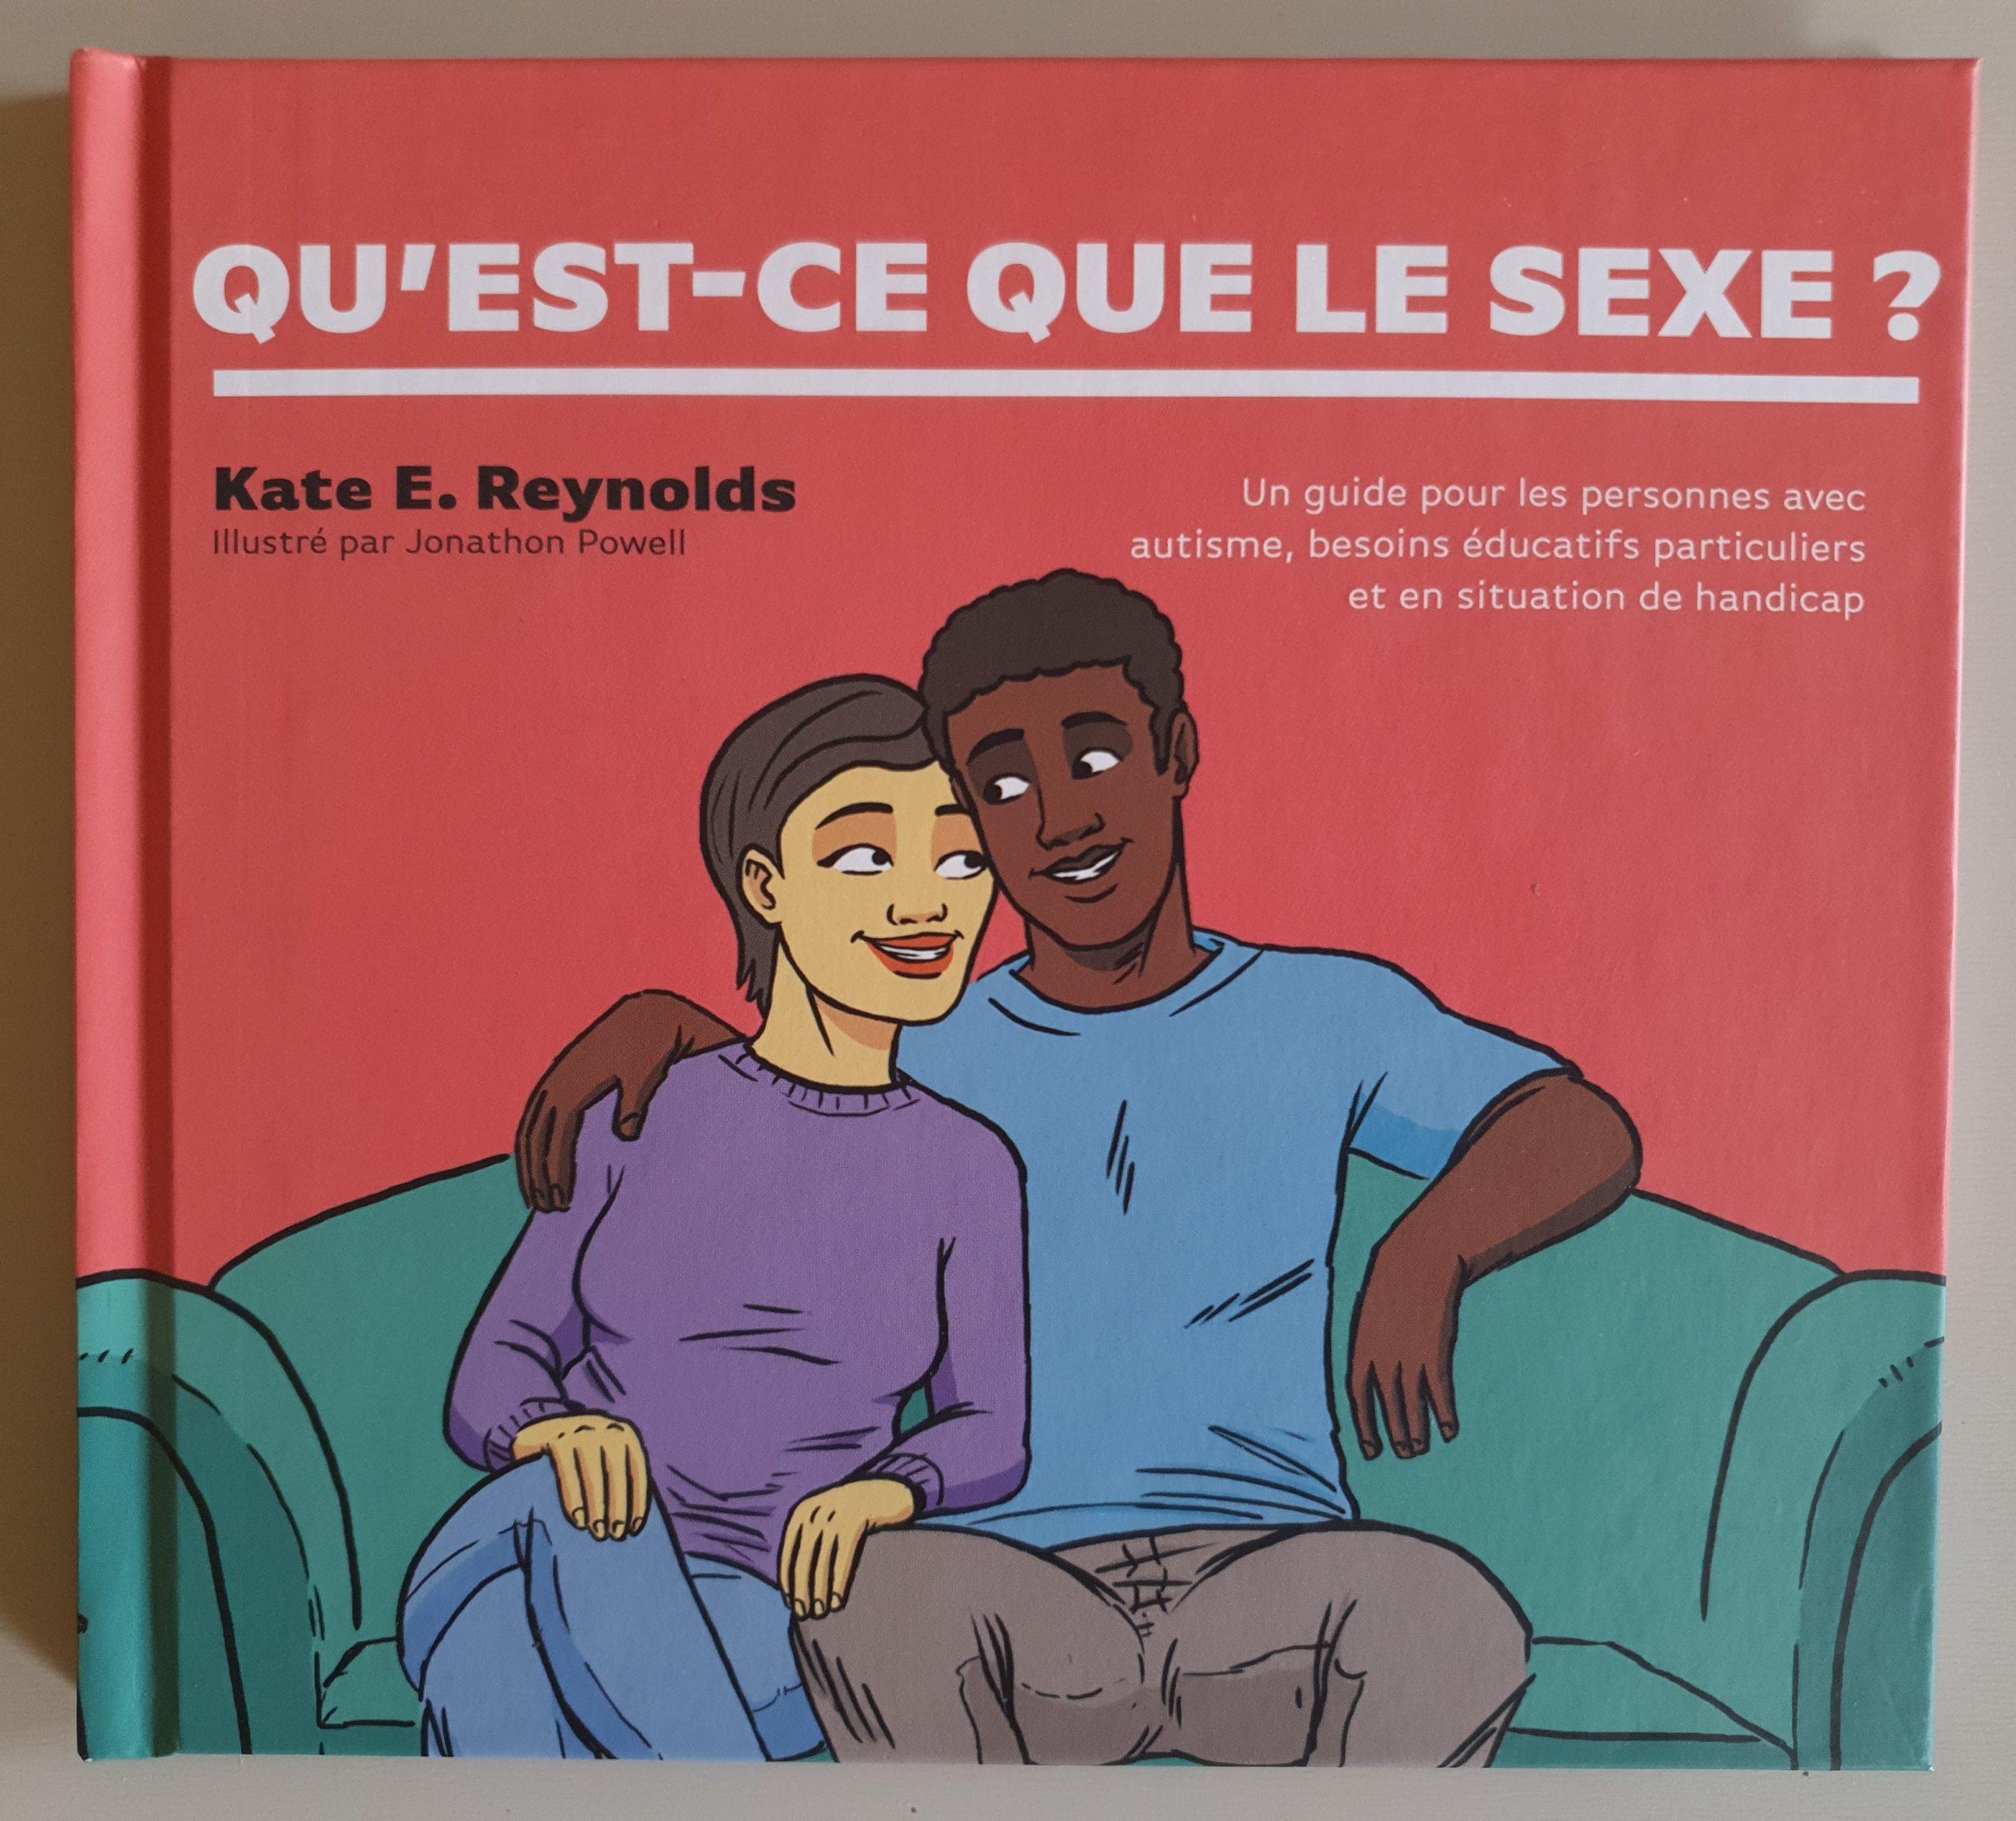 Première de couverture du livre "Qu'est ce que le sexe?"